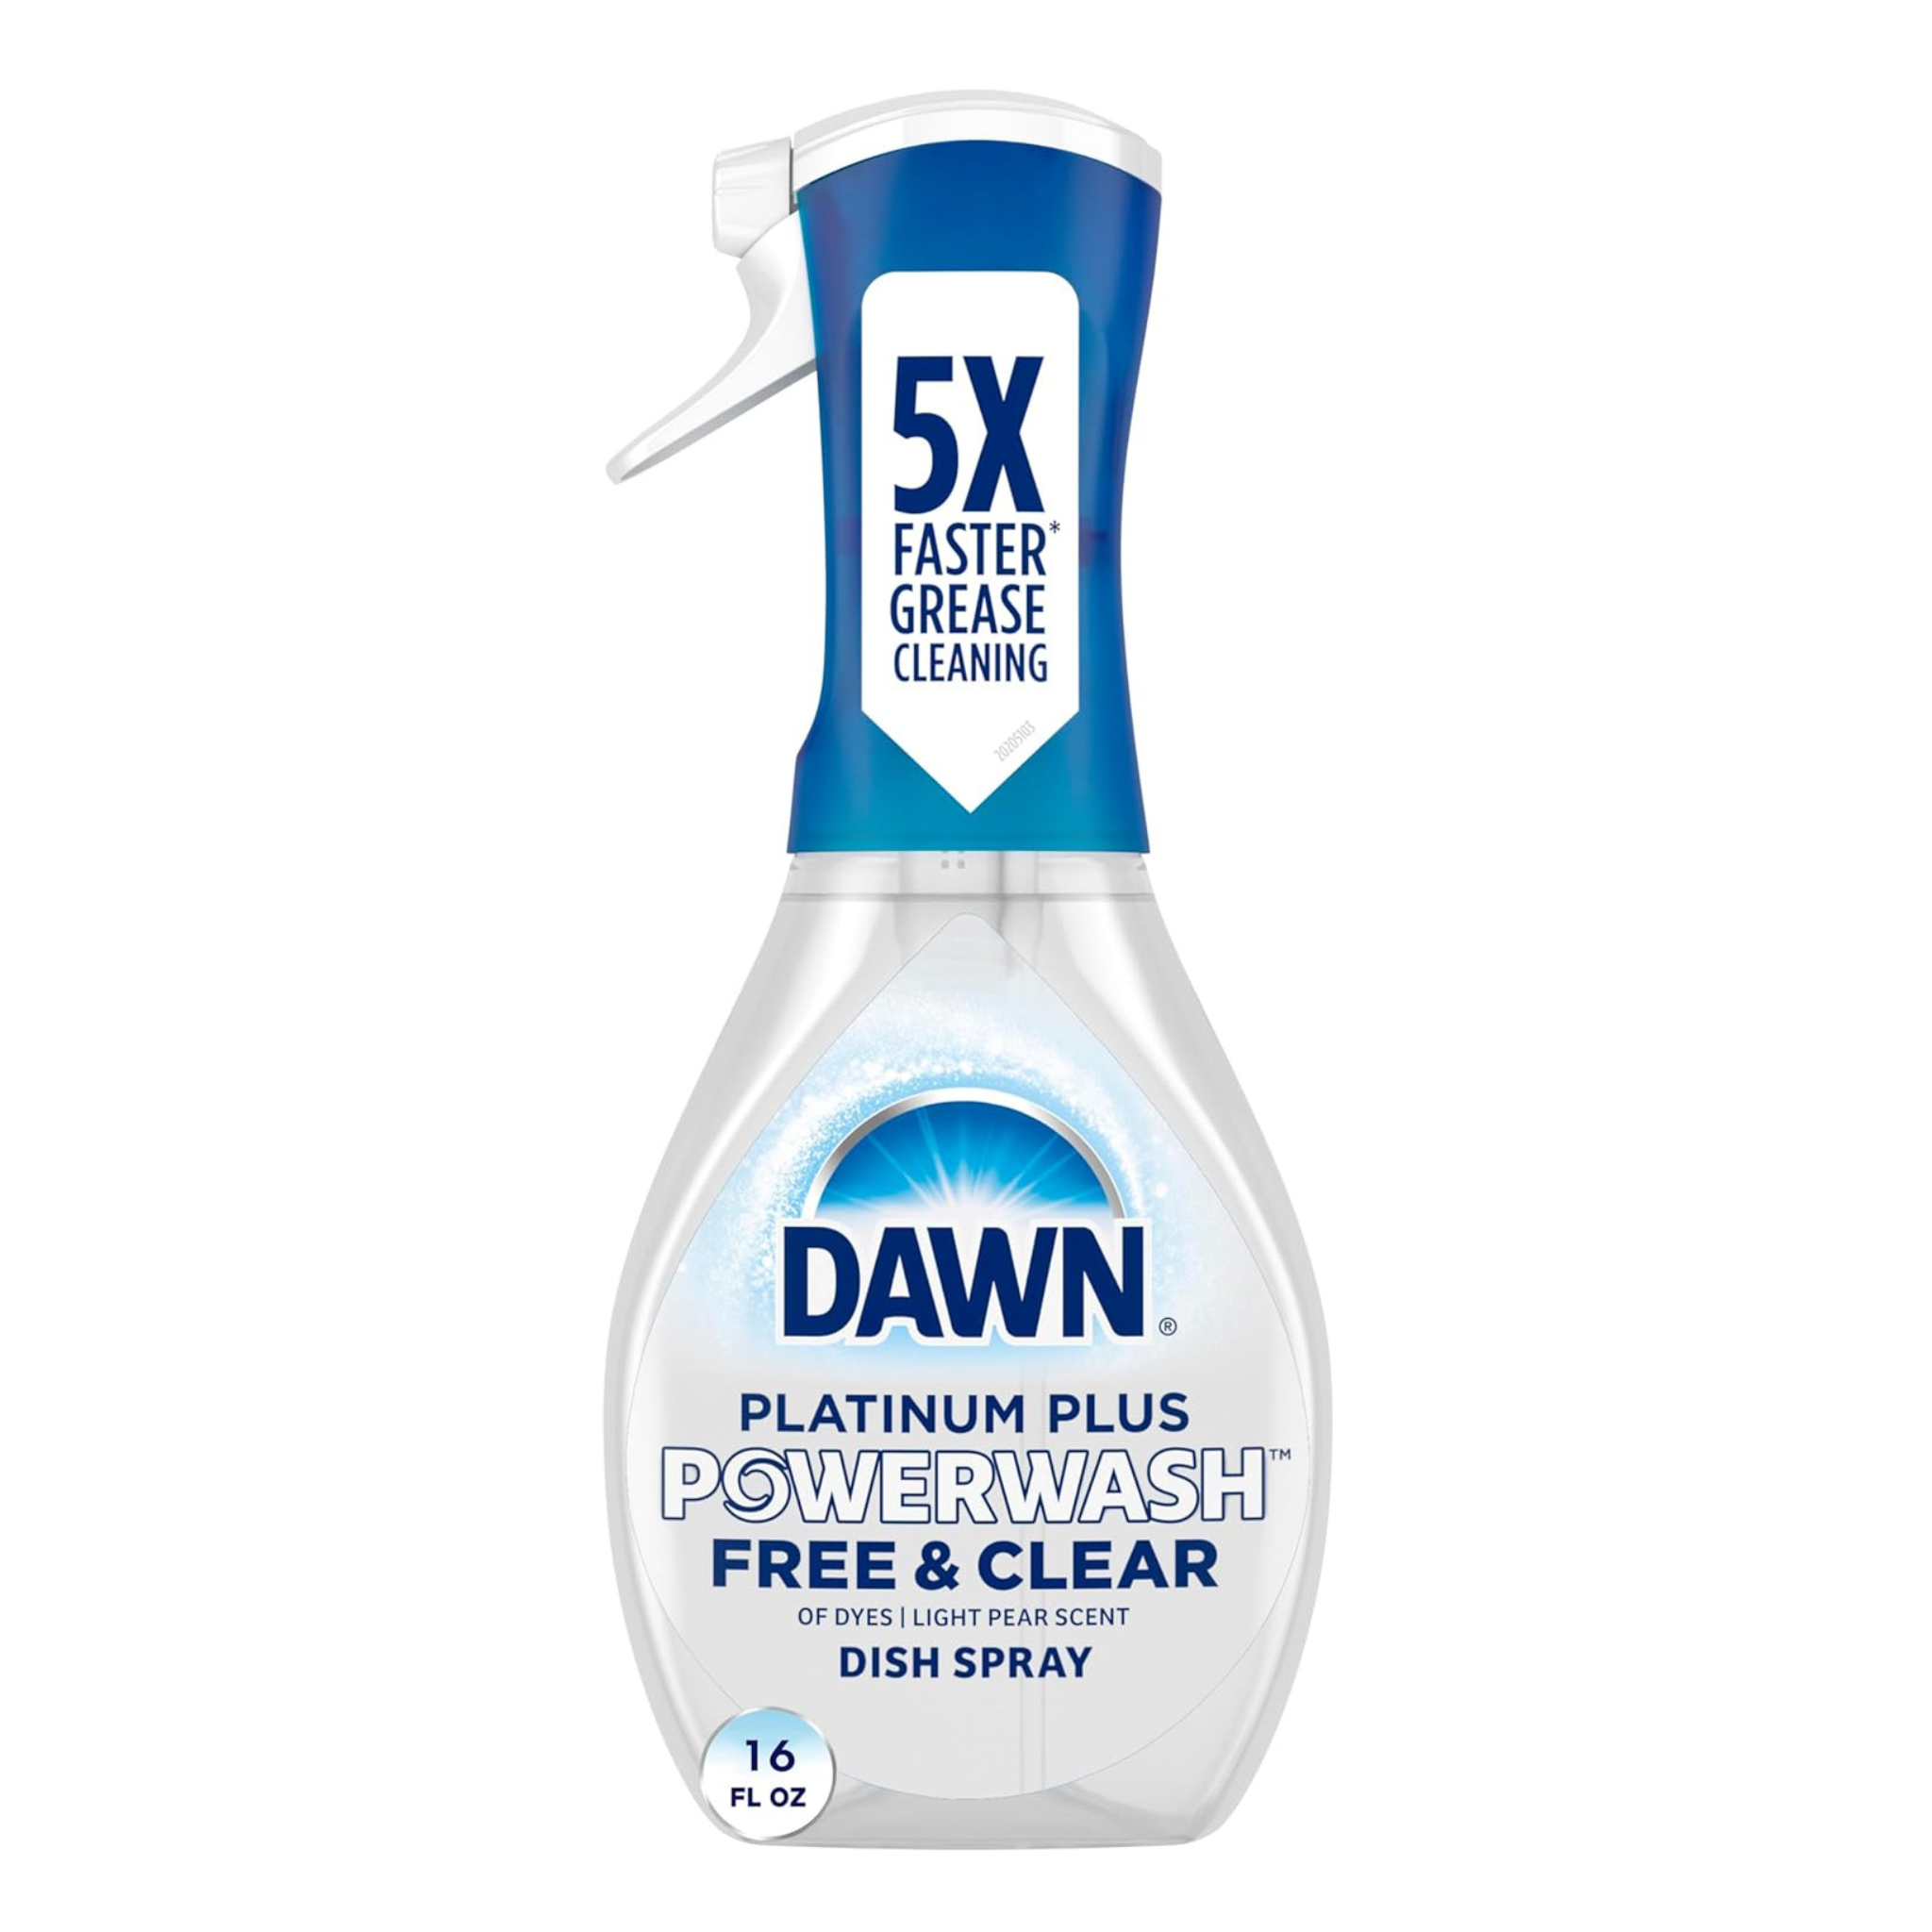 Dawn Powerwash Free & Clear Light Pear Dish Spray, 16 Fl Oz